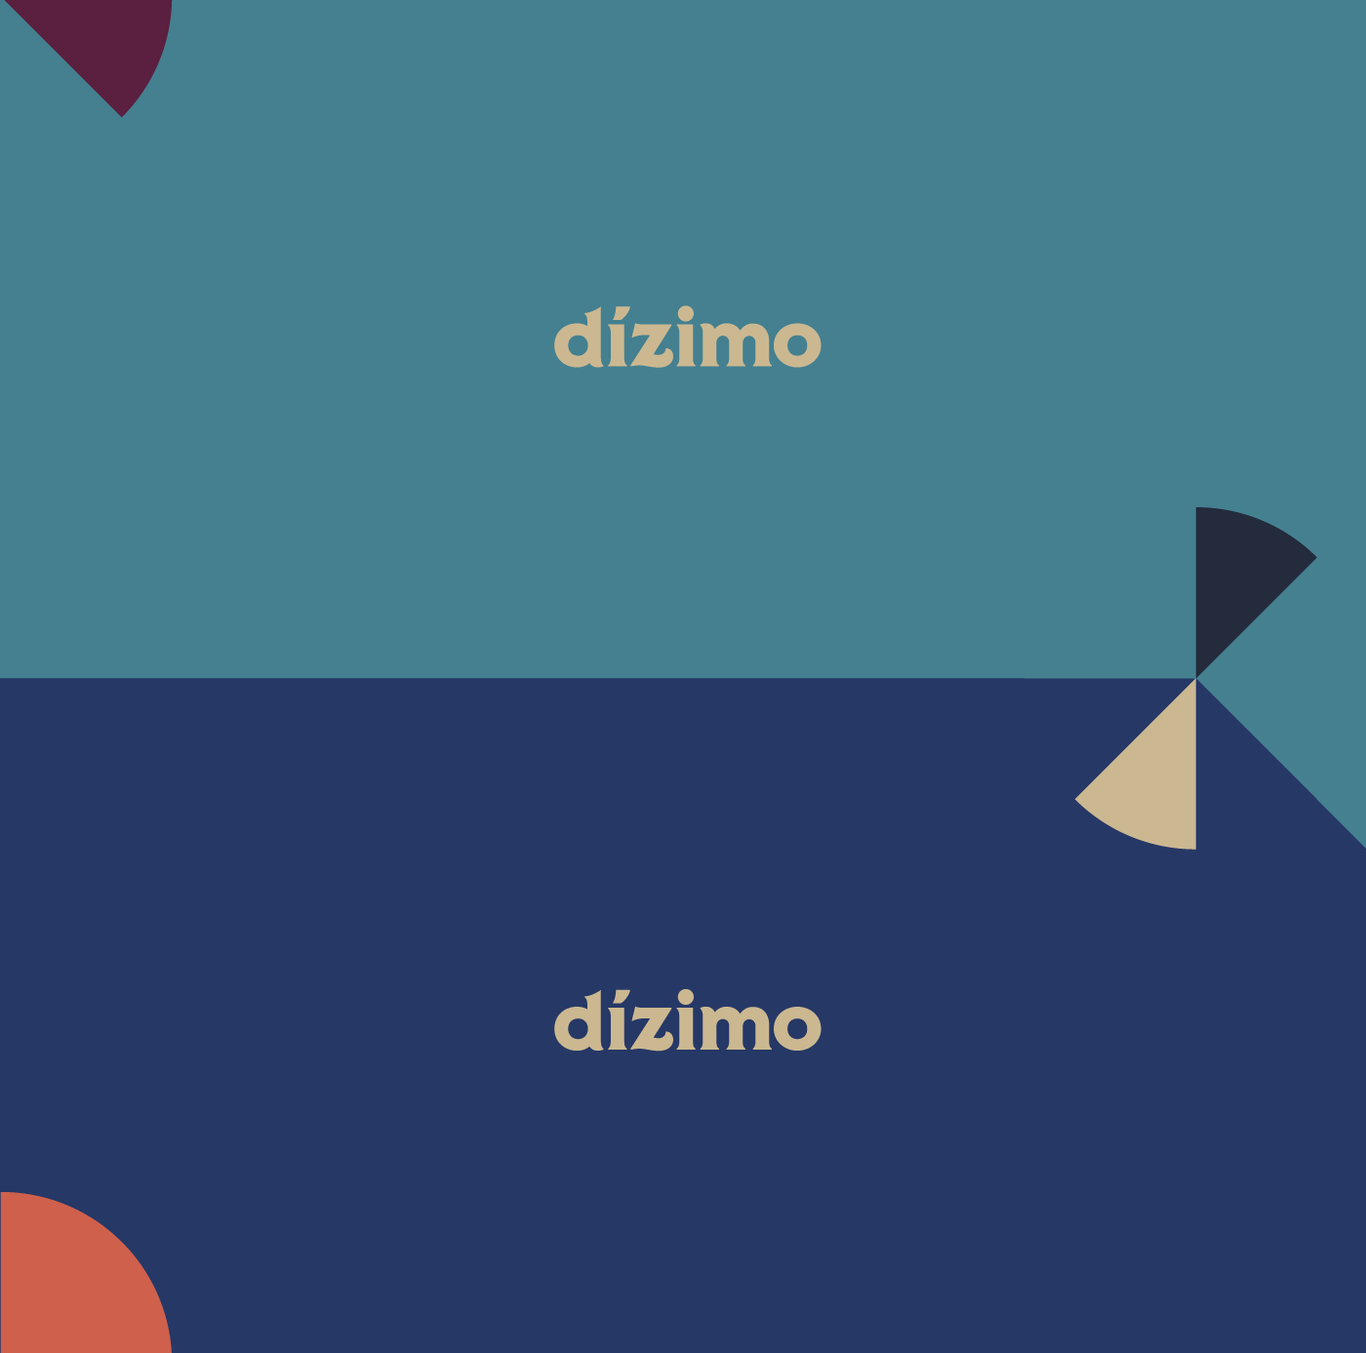 Айдентика Dízimo - платформы для сбора пожертвований